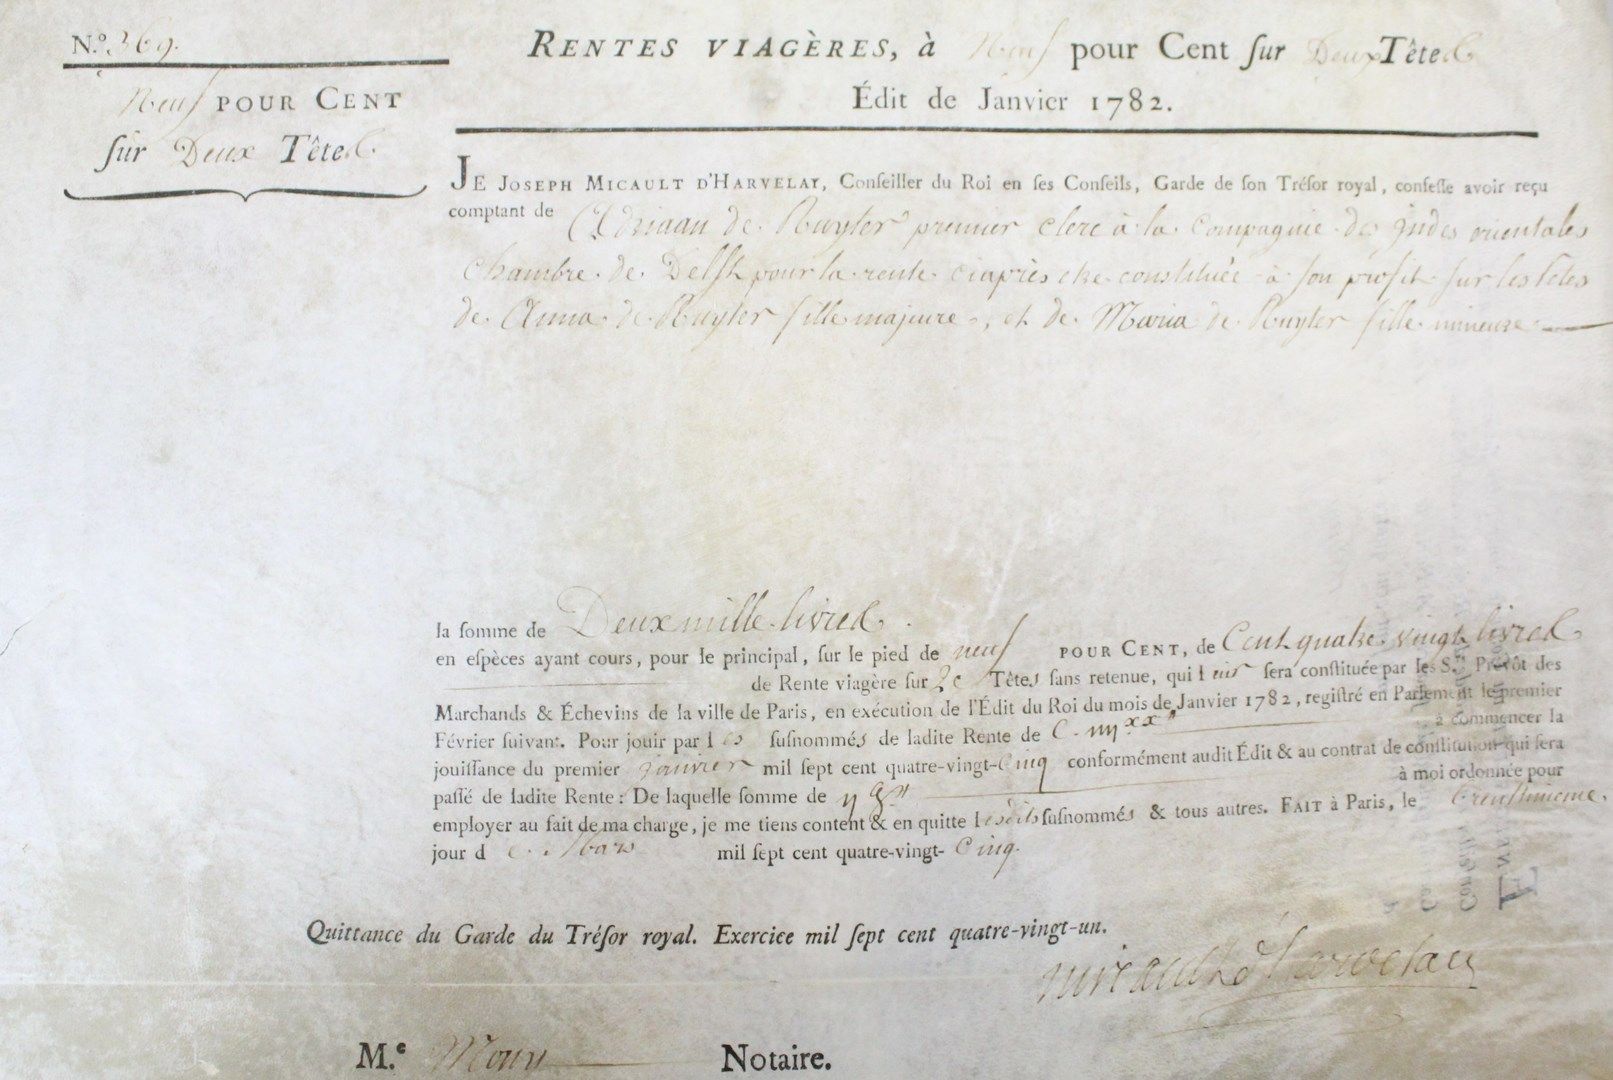 Null MIETEN. - Leibrentenvertrag, datiert Paris 31. März 1785. 245 x 360 mm.

Sc&hellip;